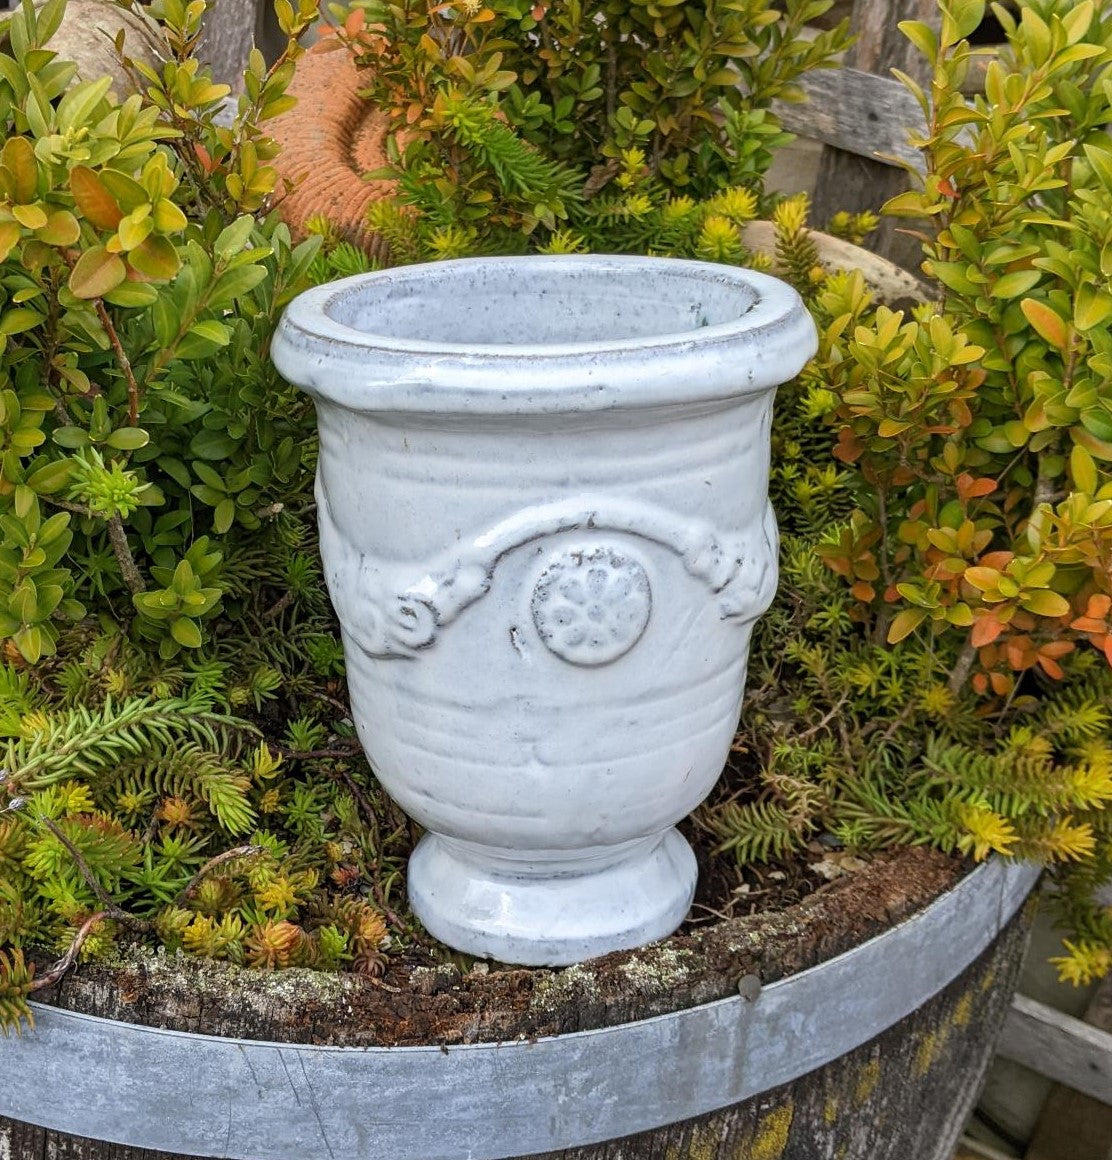 Neu !! Kleiner weißer Pokal Blumentopf aus winterfesten Steinzeug ca. 22 cm hoch